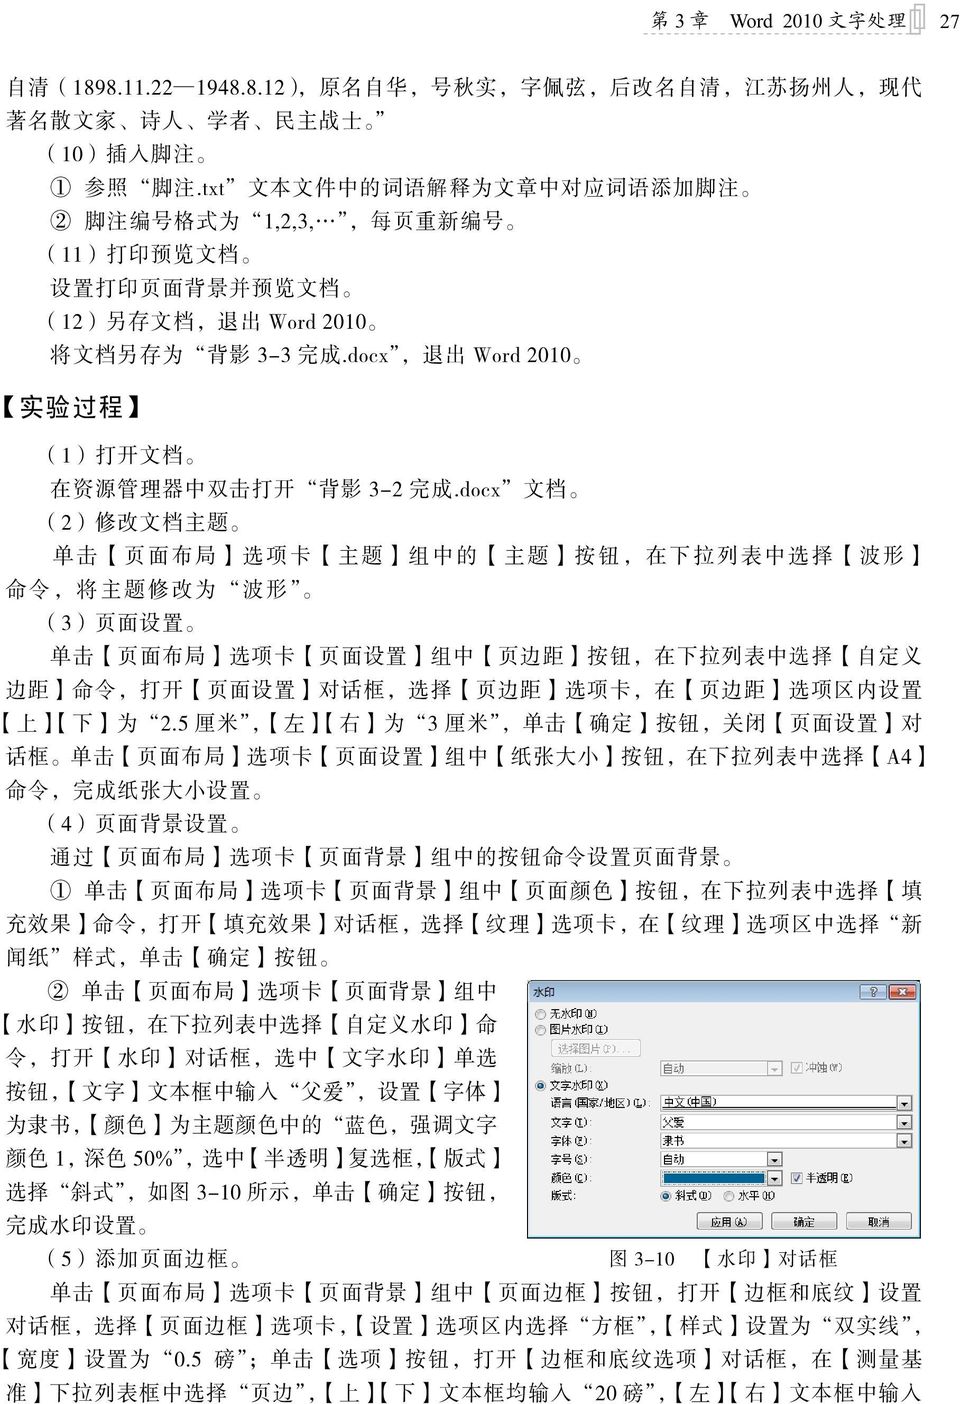 docx, 退 出 Word 2010 实 验 过 程 (1) 打 开 文 档 在 资 源 管 理 器 中 双 击 打 开 背 影 3-2 完 成.